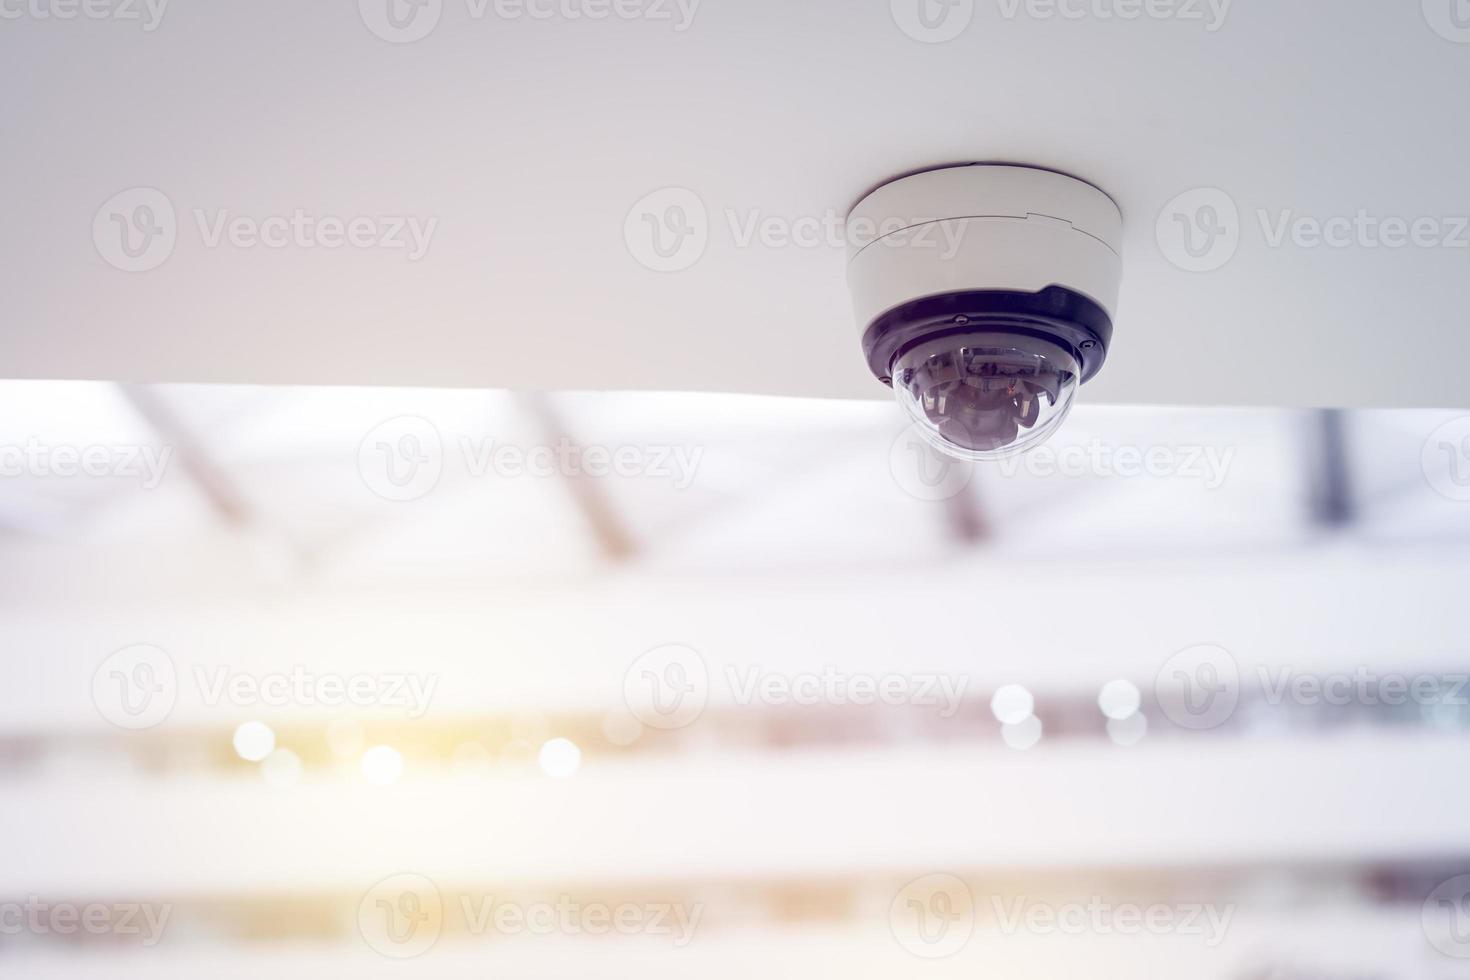 telecamera di sicurezza cctv su soffitto bianco, telecamere intelligenti, registrazione video, sistema antifurto, sorveglianza. foto